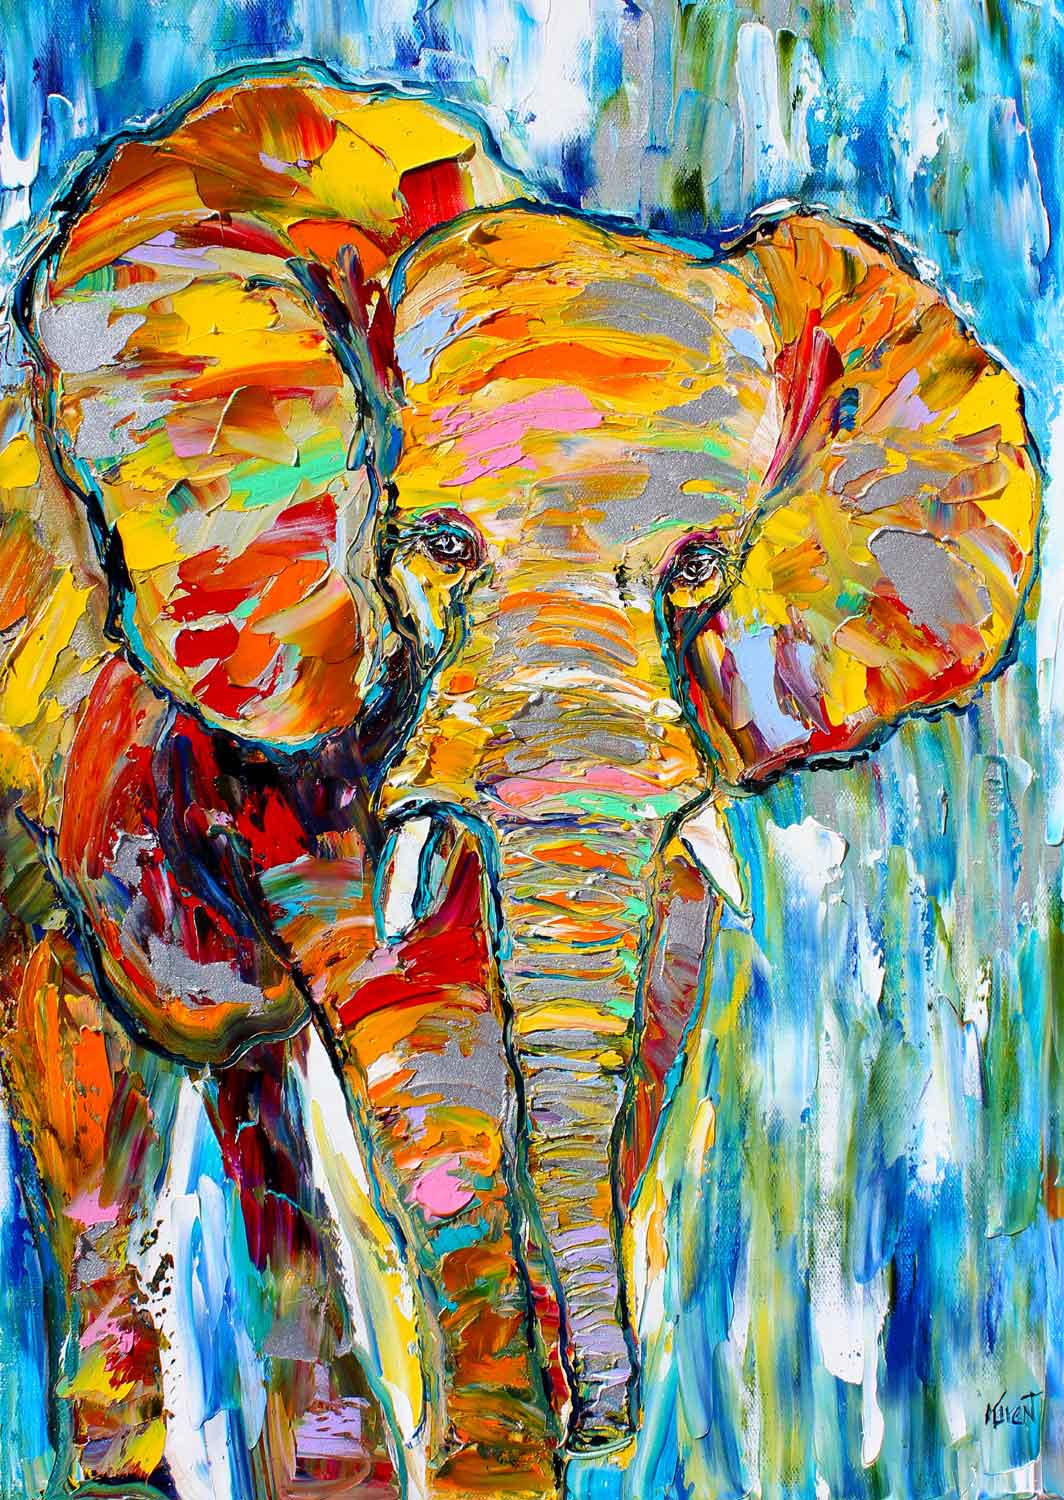 Puzzle Enjoy Elefante Colorido de 1000 Piezas